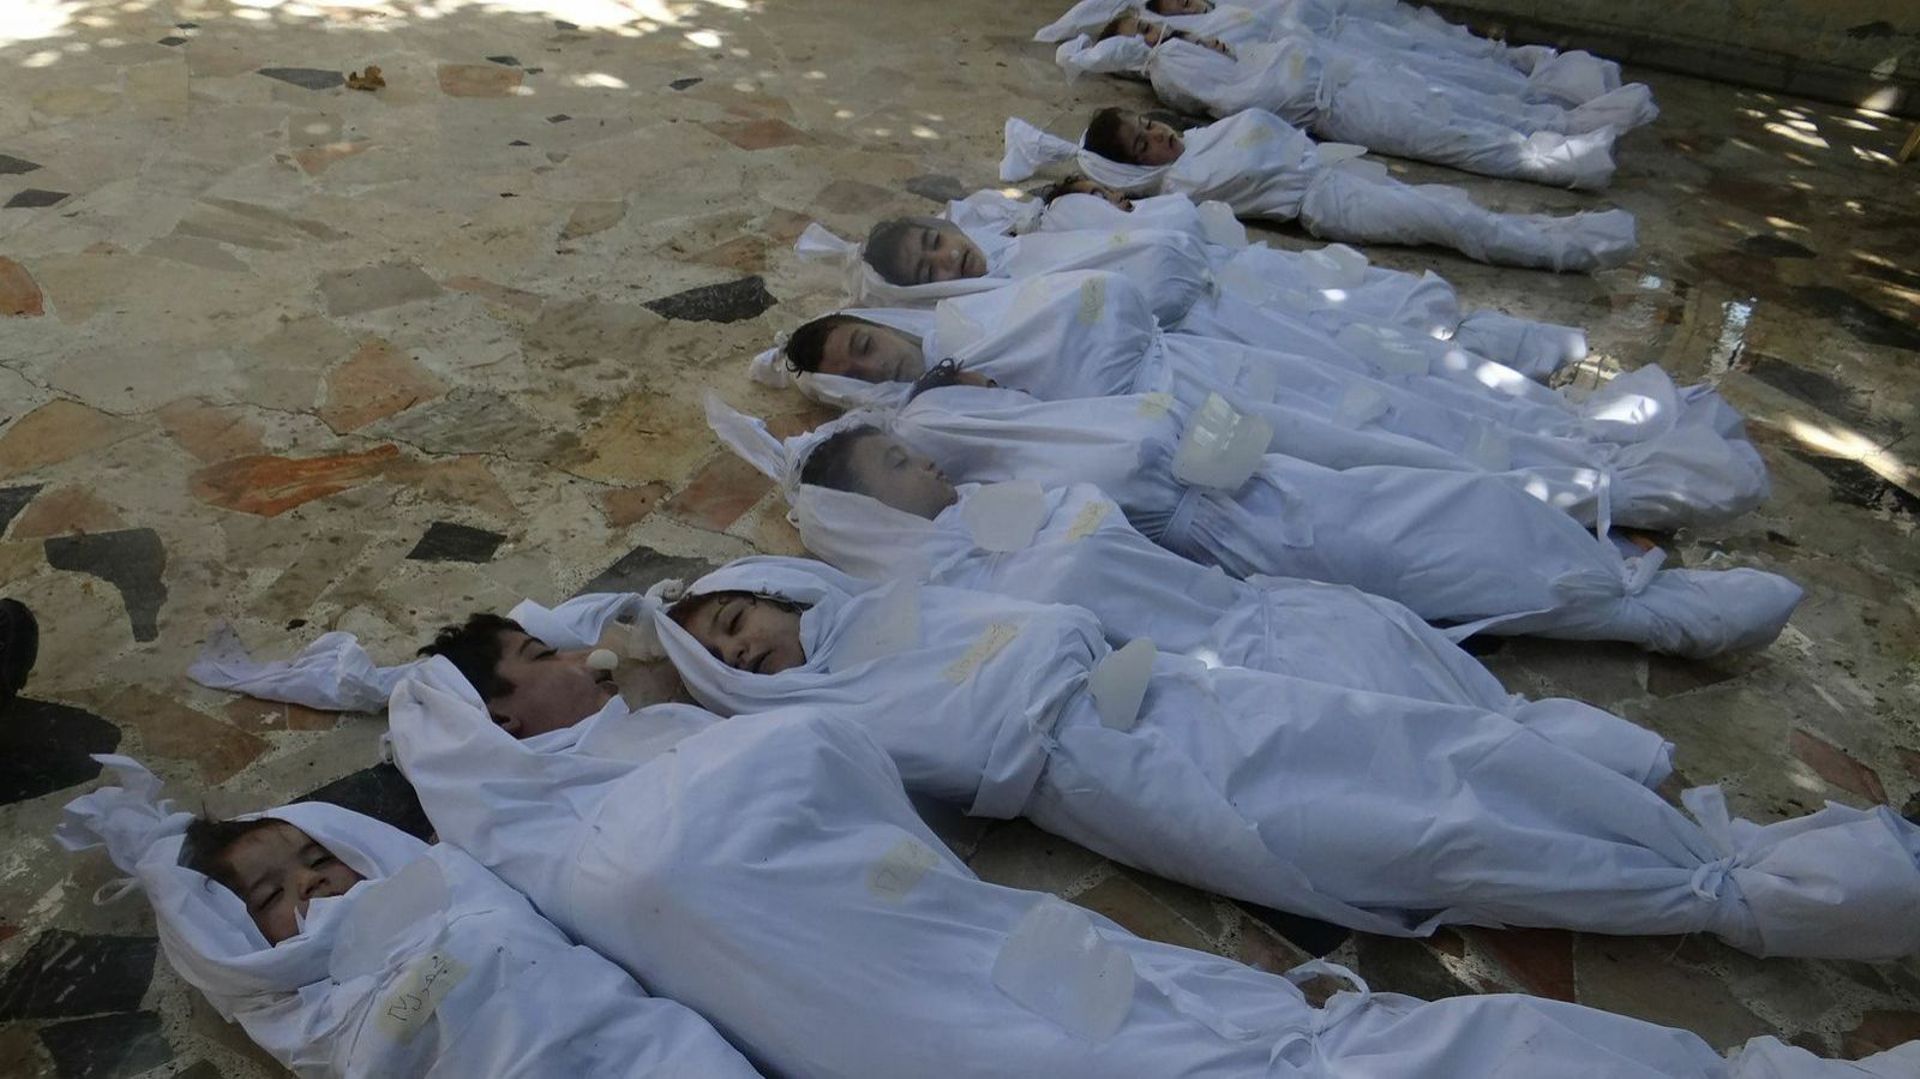 355 patients "présentant des symptômes neurotoxiques" sont décédés, selon MSF, première source indépendante à confirmer l'utilisation d'armes chimiques dans la région de Damas